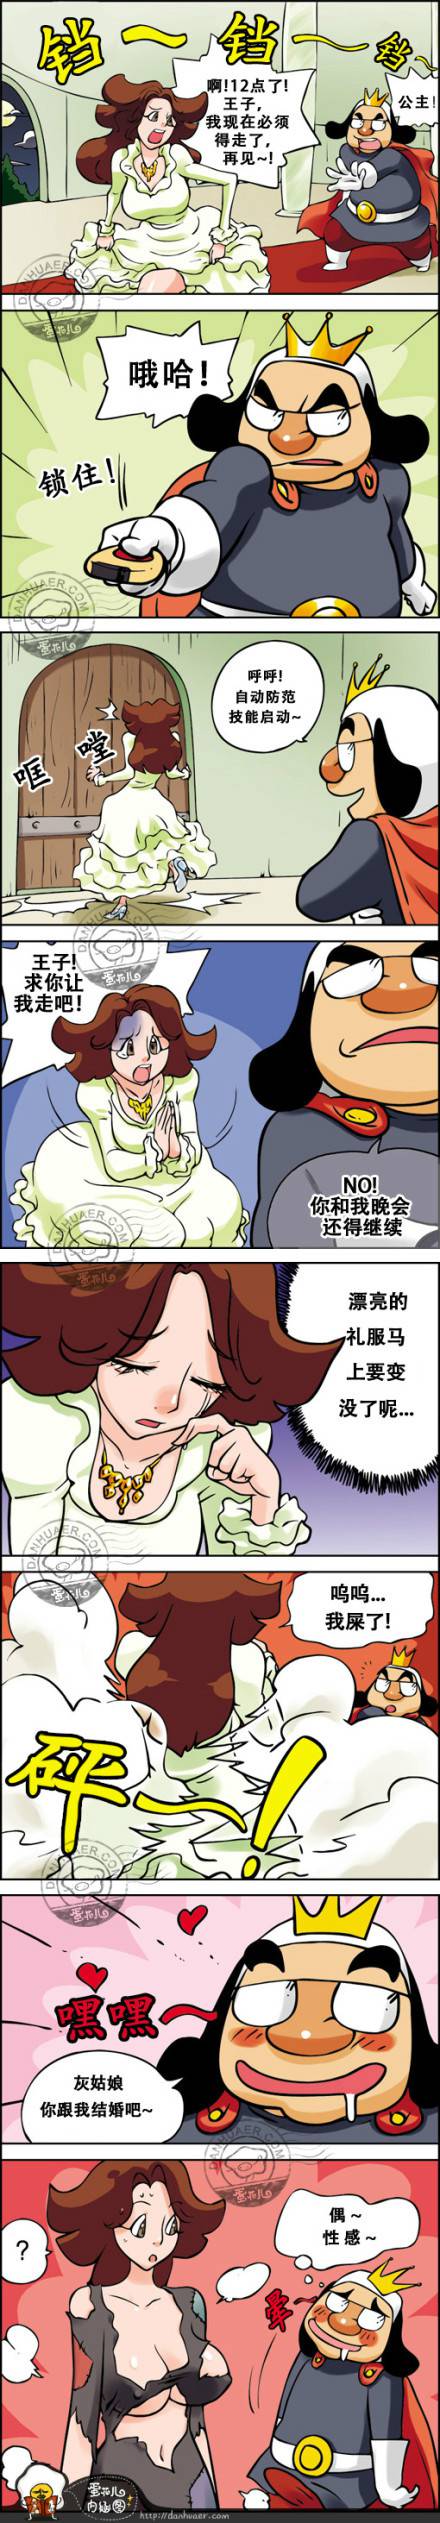 邪恶漫画爆笑囧图第230刊：灰姑娘变身